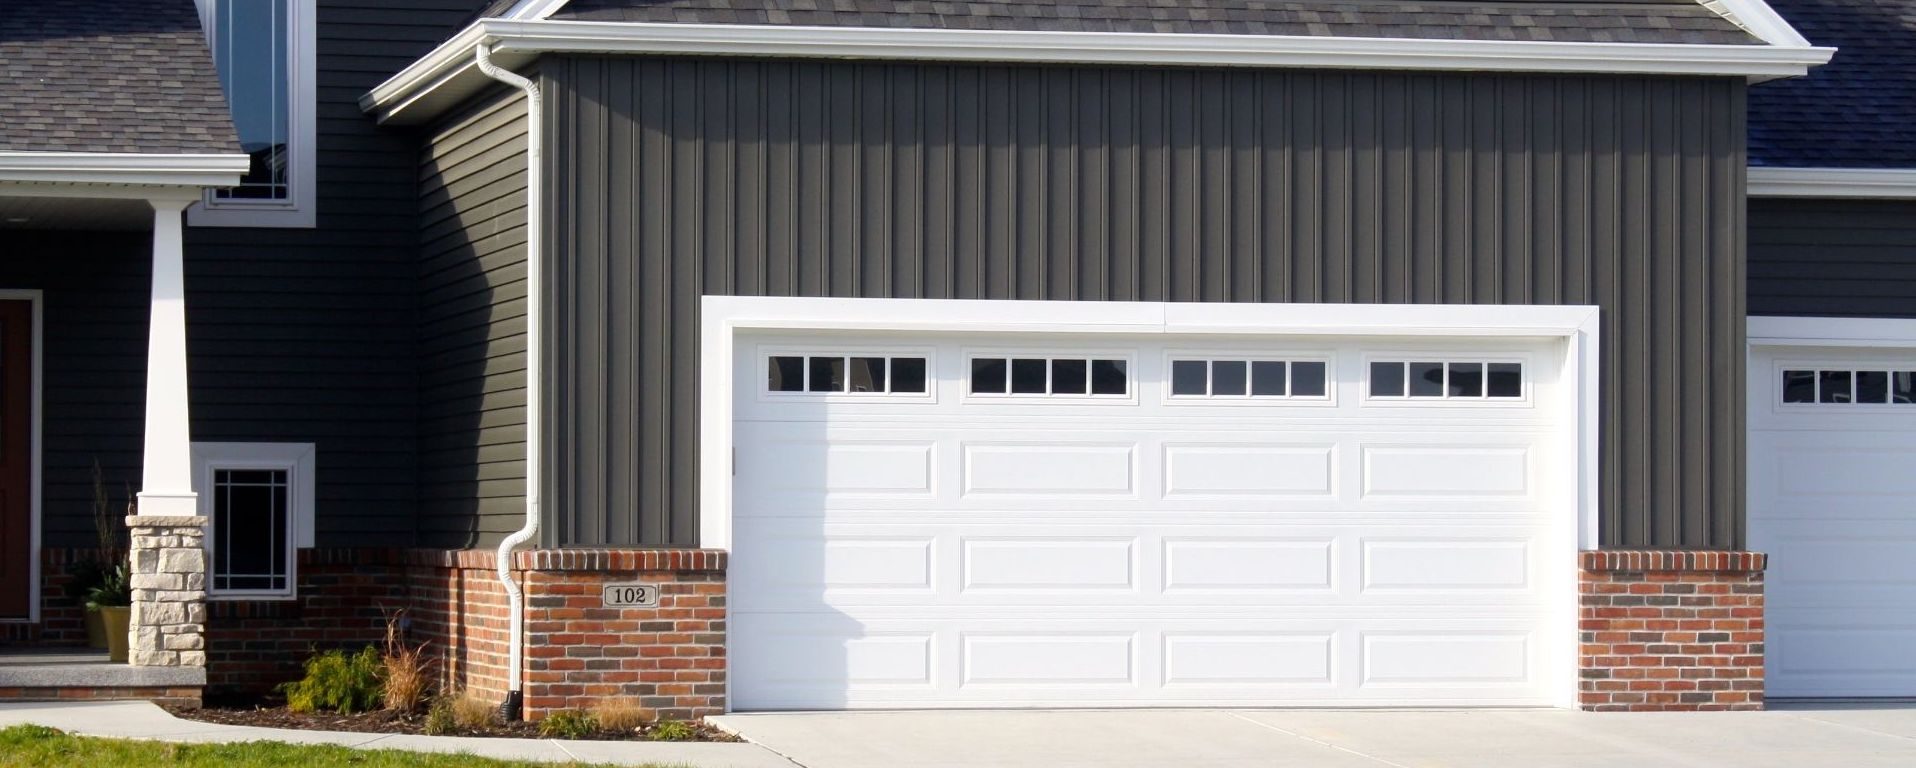 How to Choose the Best 24 Hour Garage Door Service Near Me ...